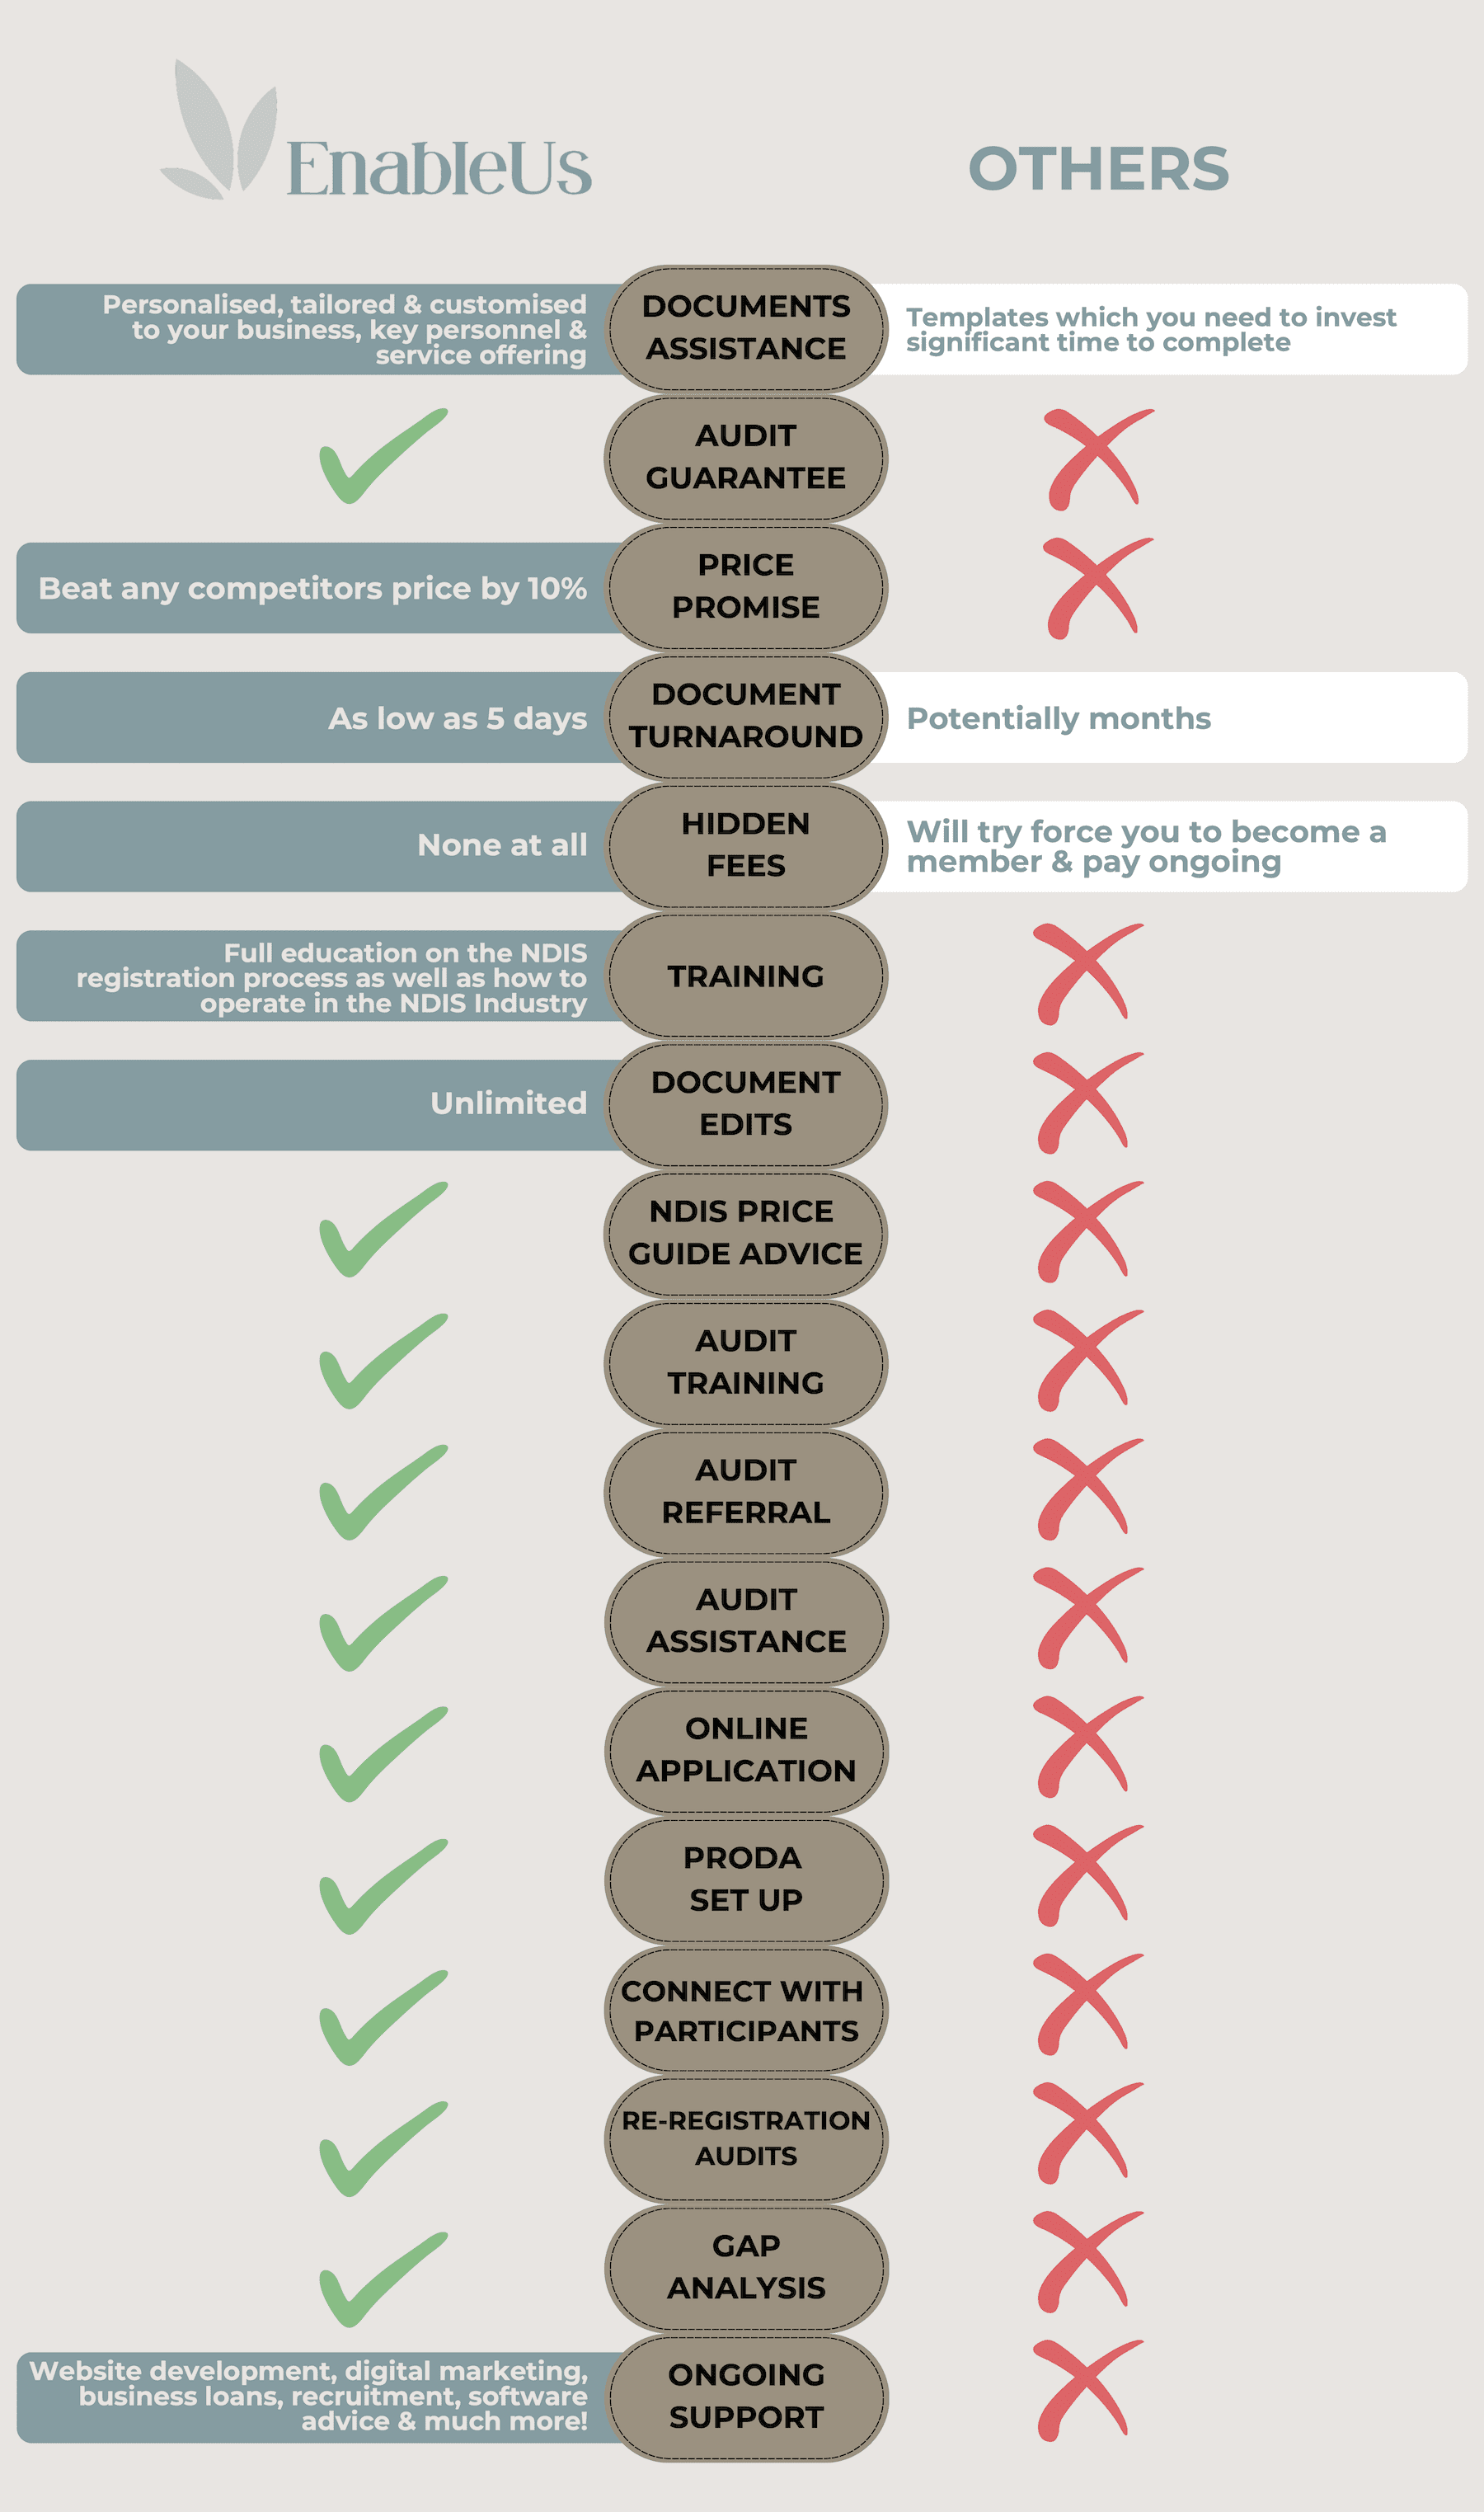 EnableUs vs Others Infographic